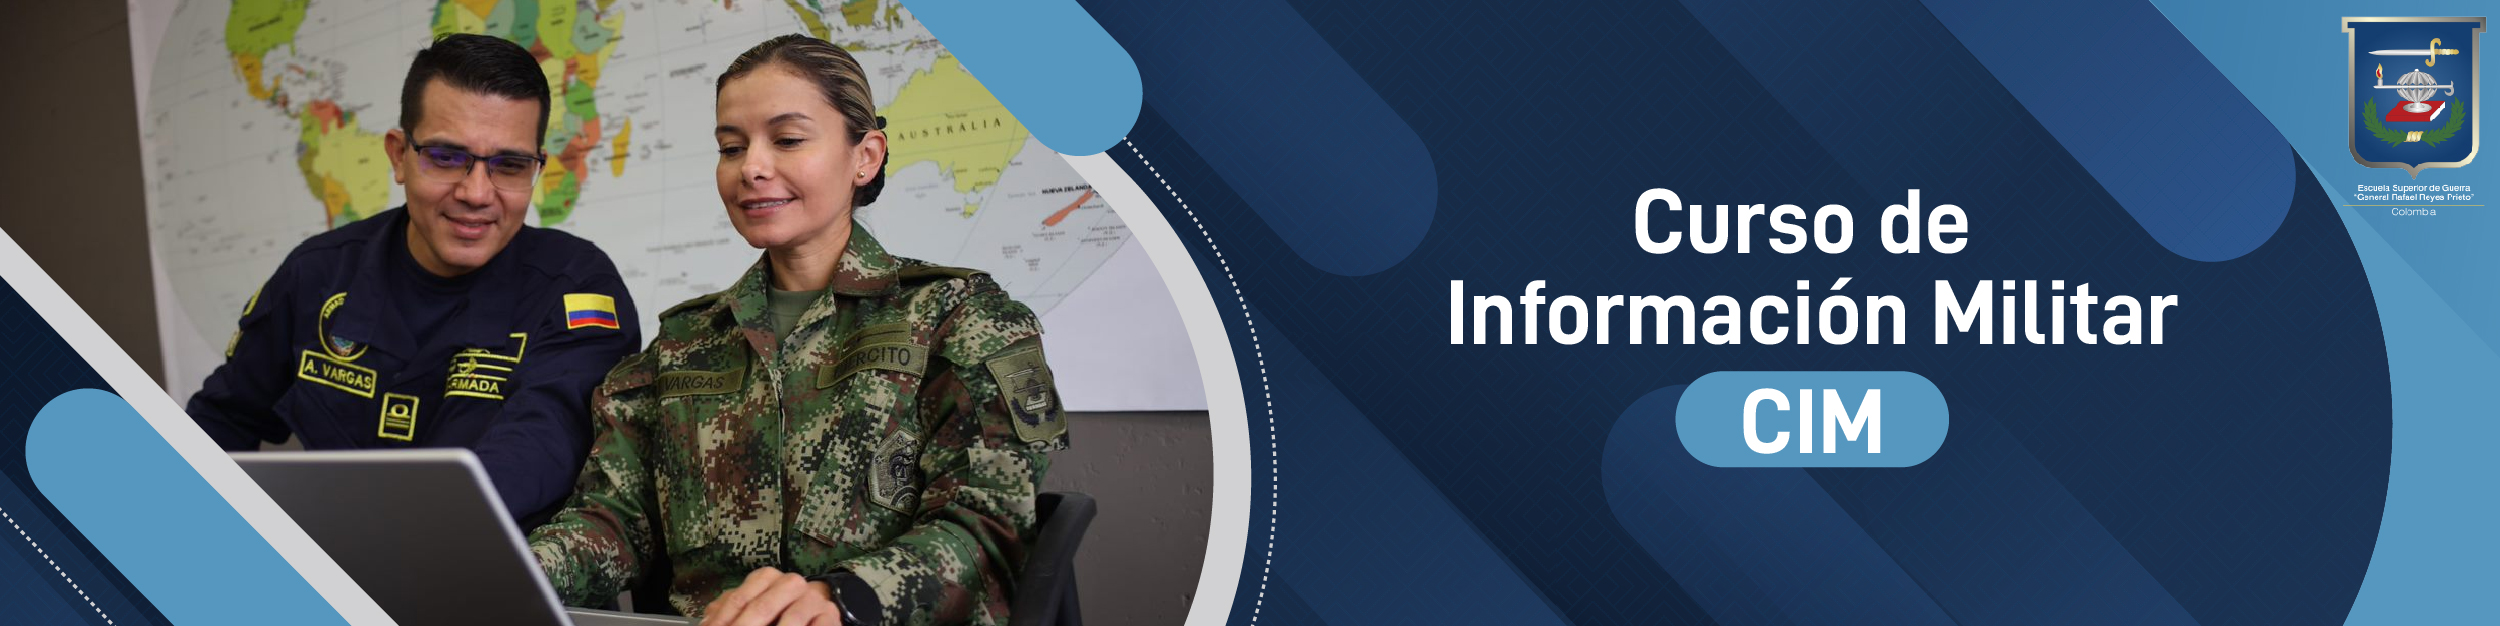 Curso de Información Militar (CIM)